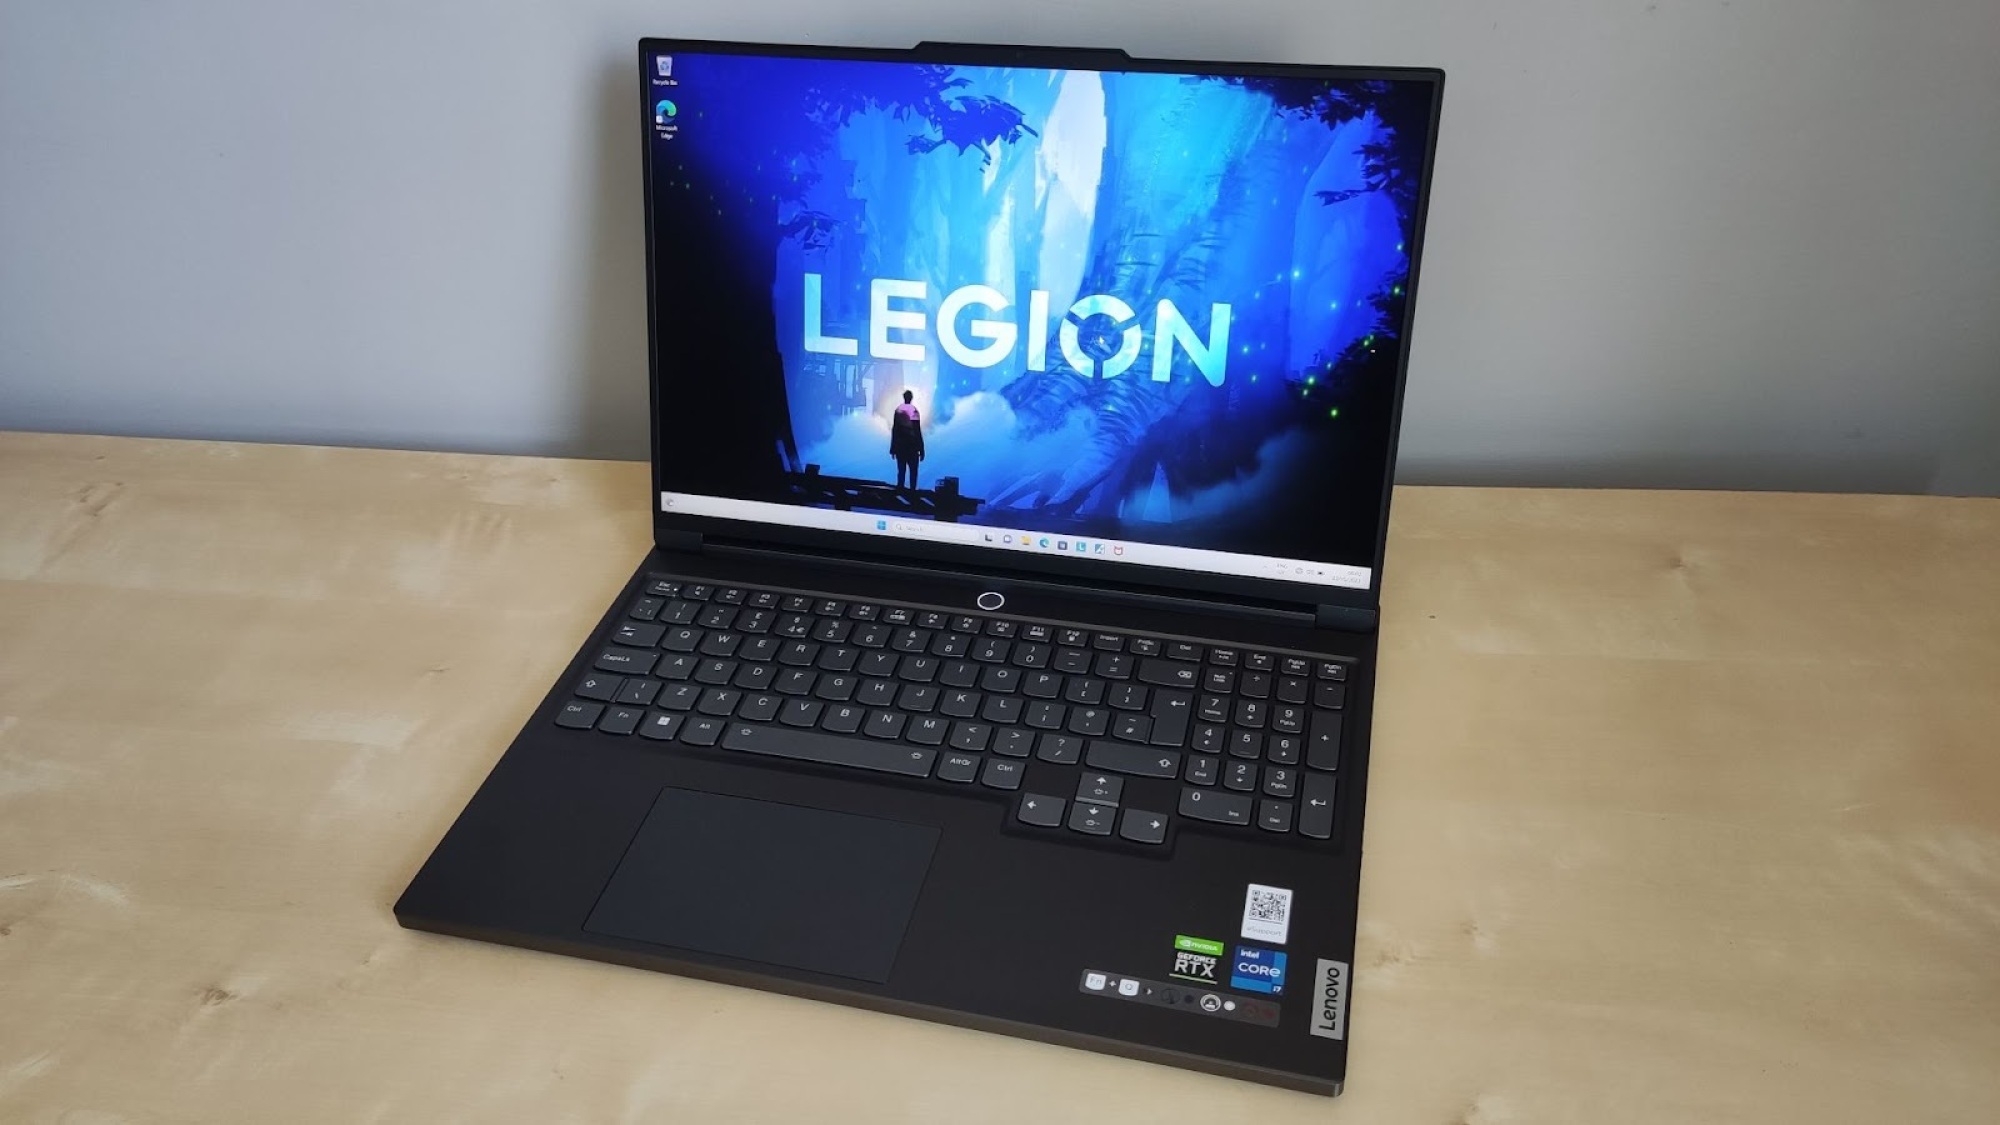 Игровой ноутбук Lenovo Legion на столе с надписью “LEGION” на экране